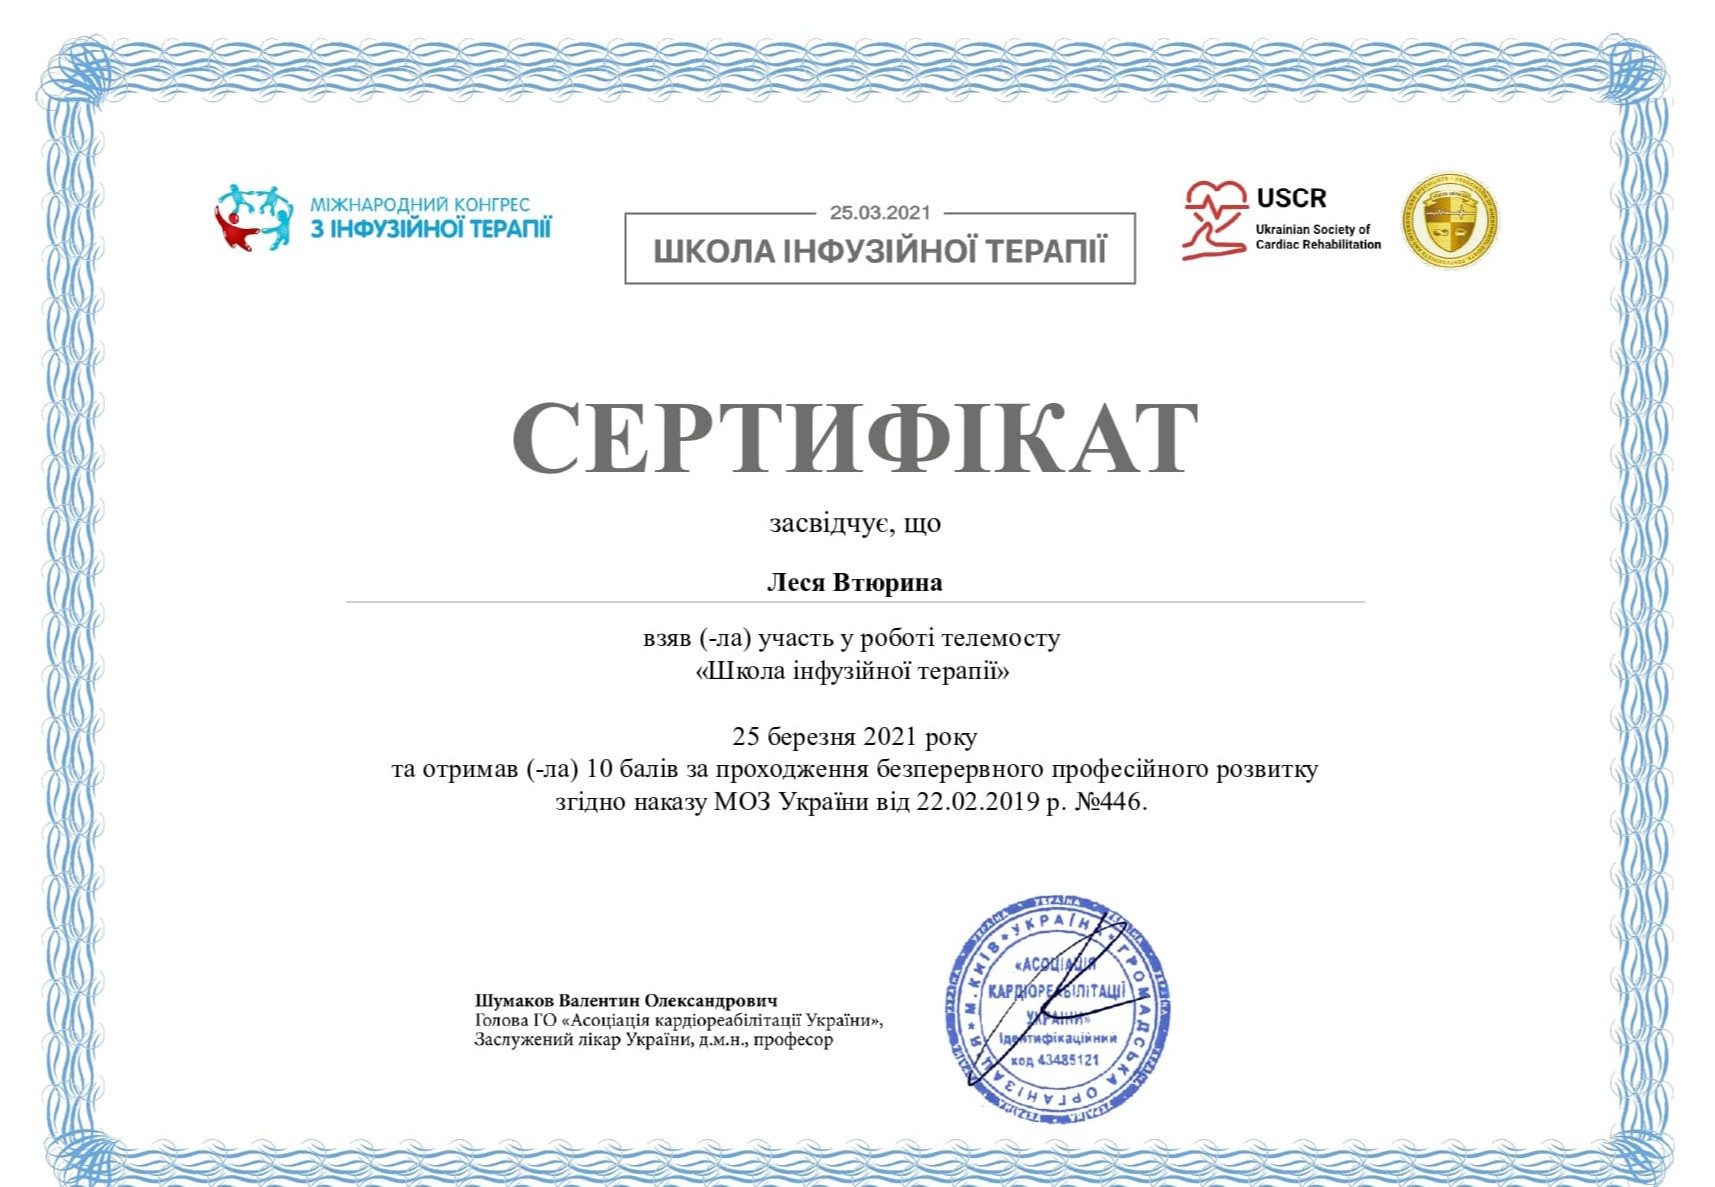 Сертификат об участи в работе телемоста